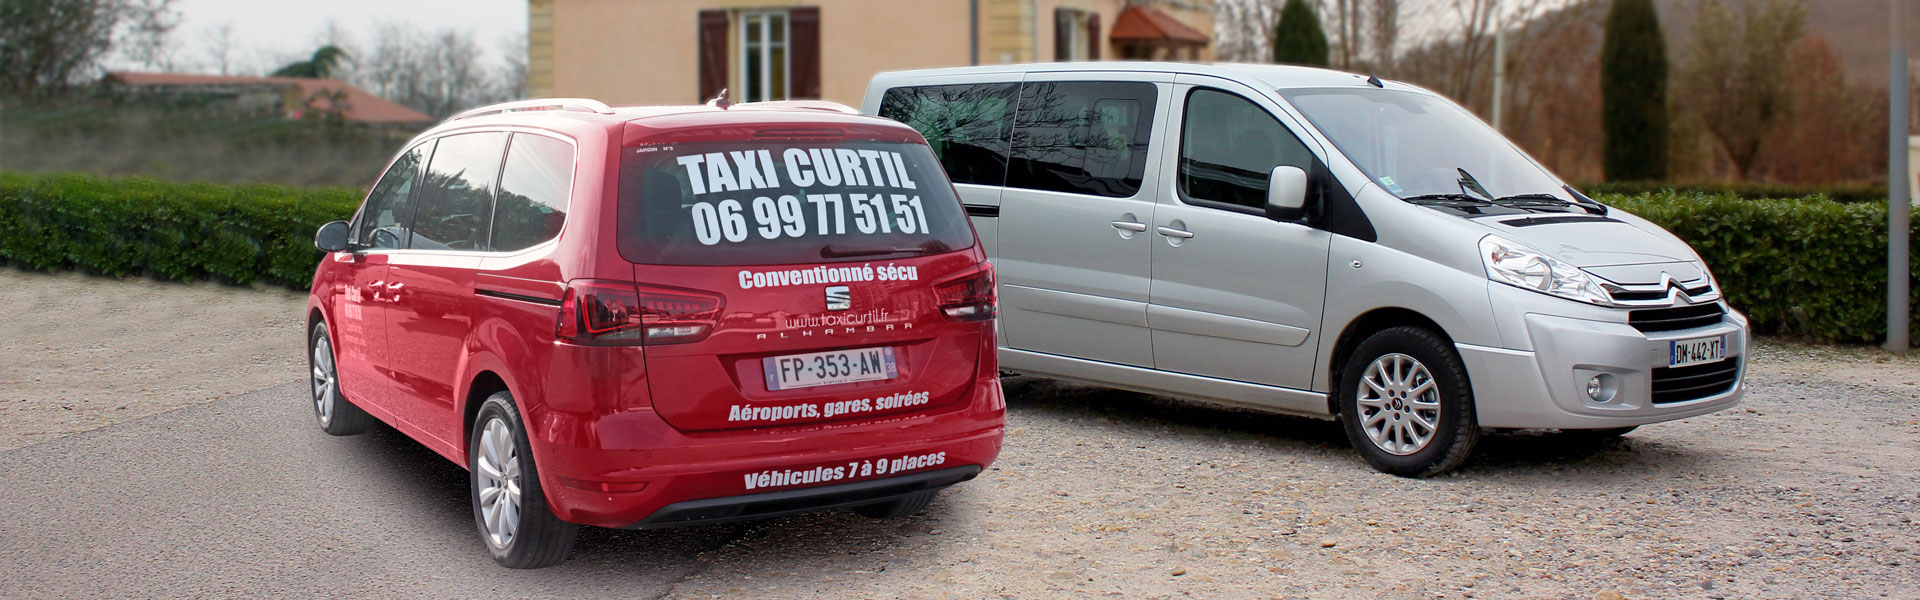 Taxi Curtil : tous vos déplacements à Vienne, Lyon et en Isère